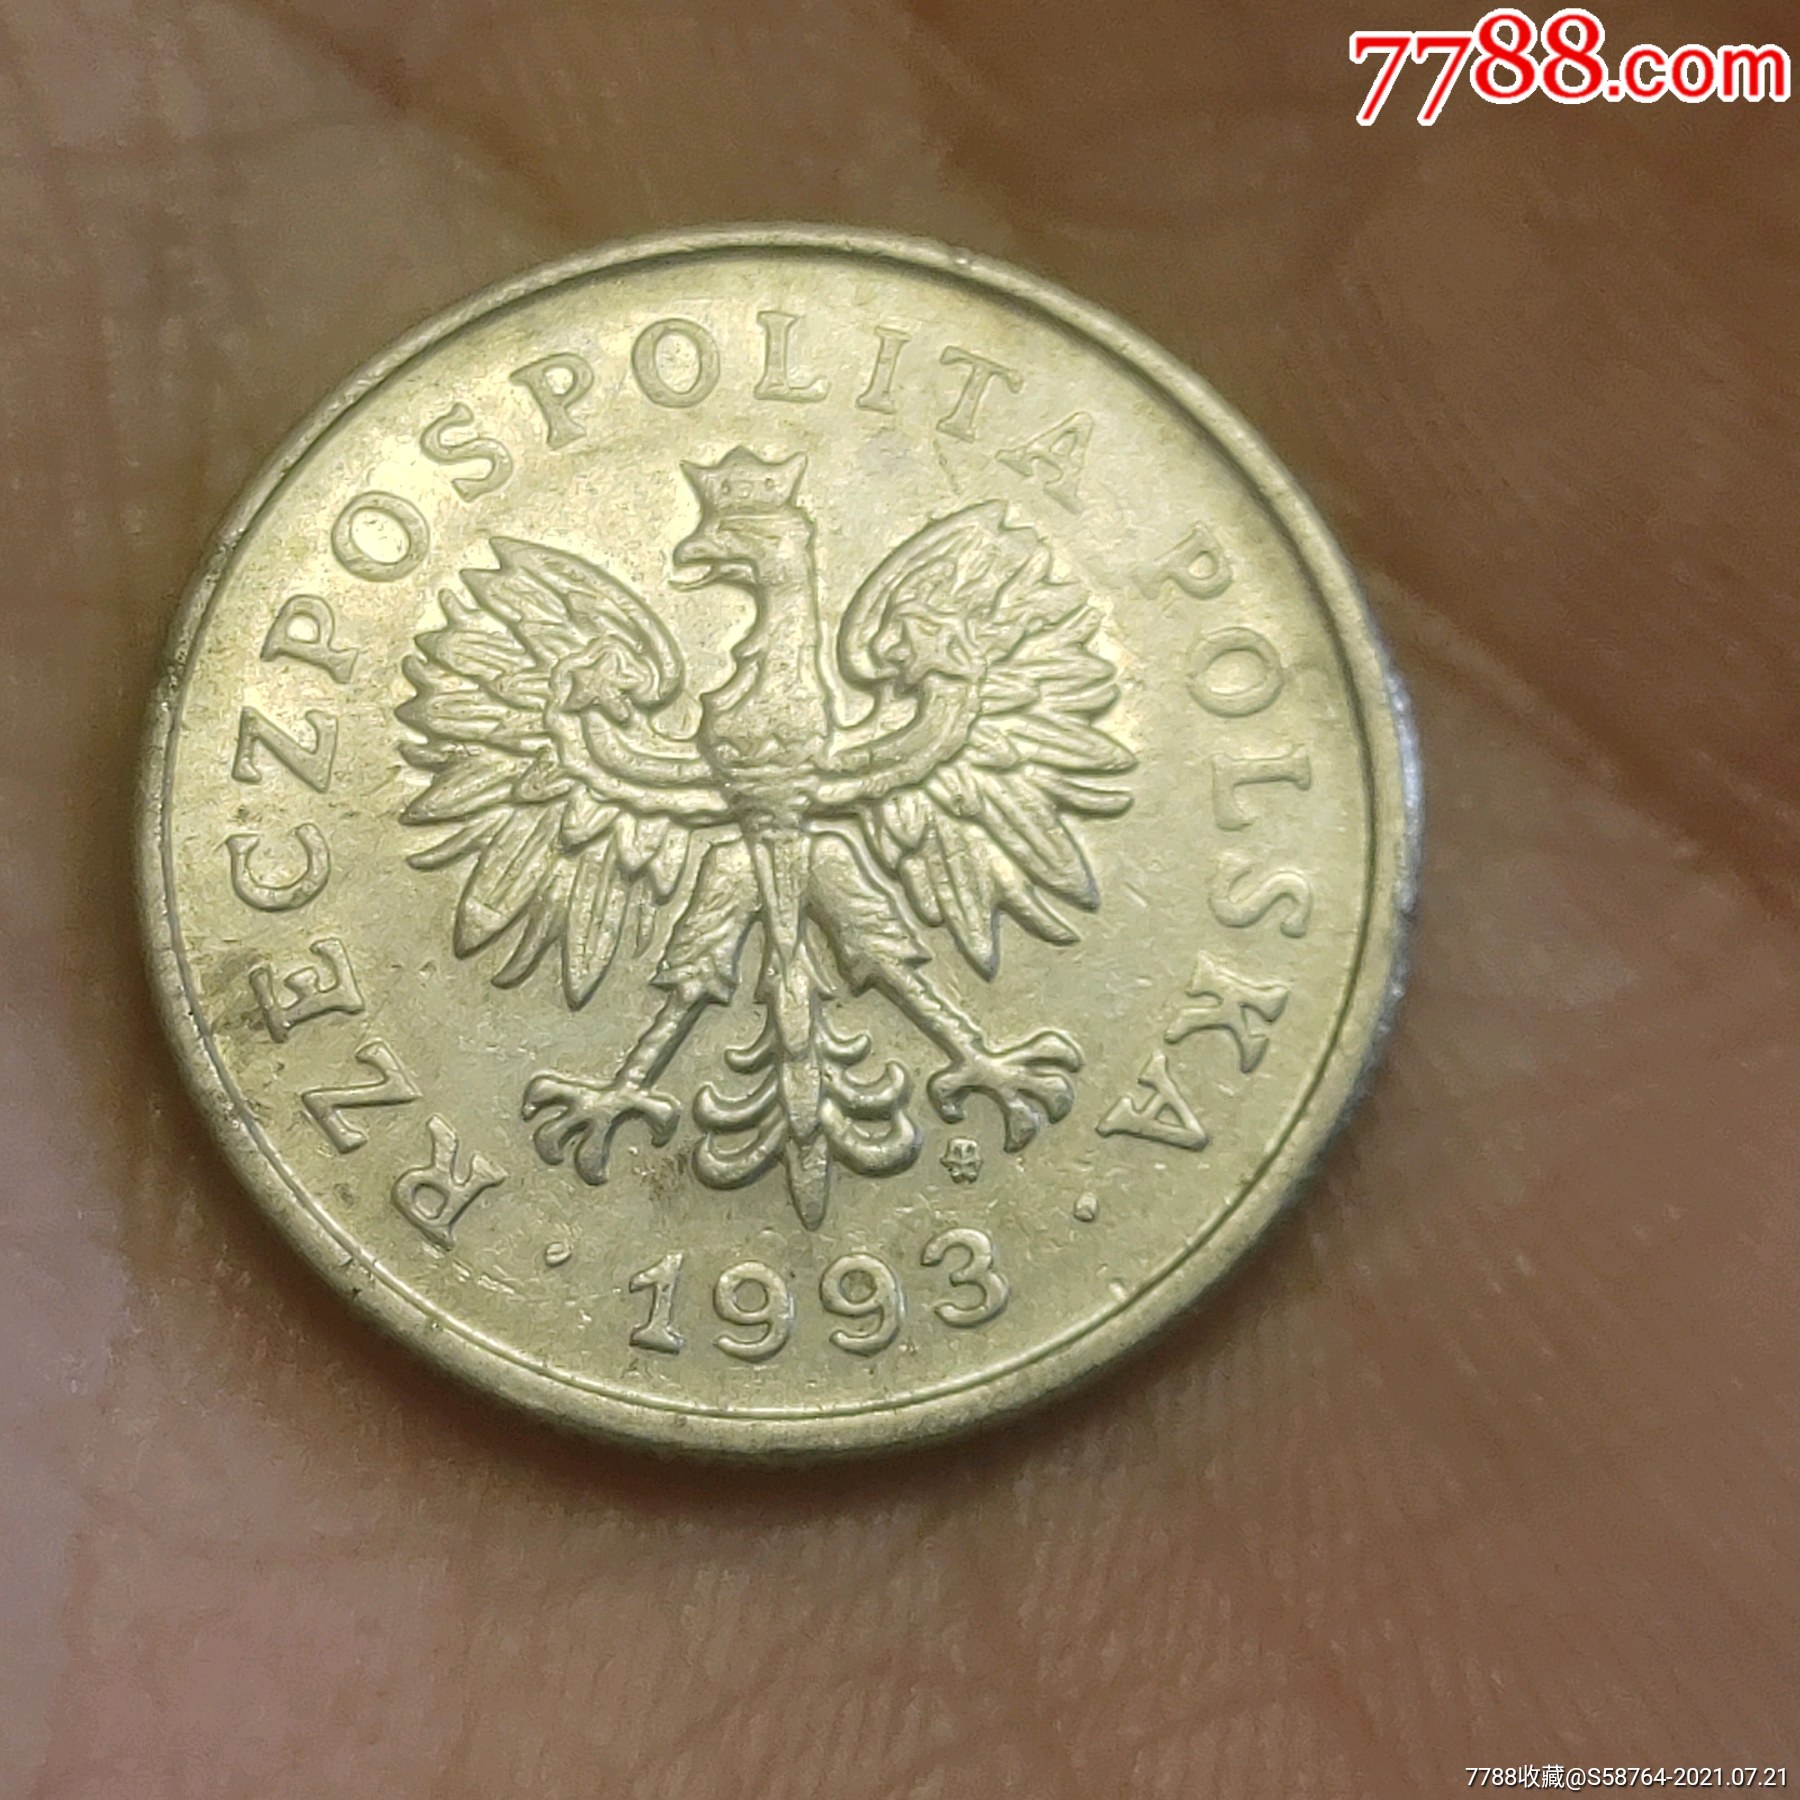 波兰1993年1兹罗提